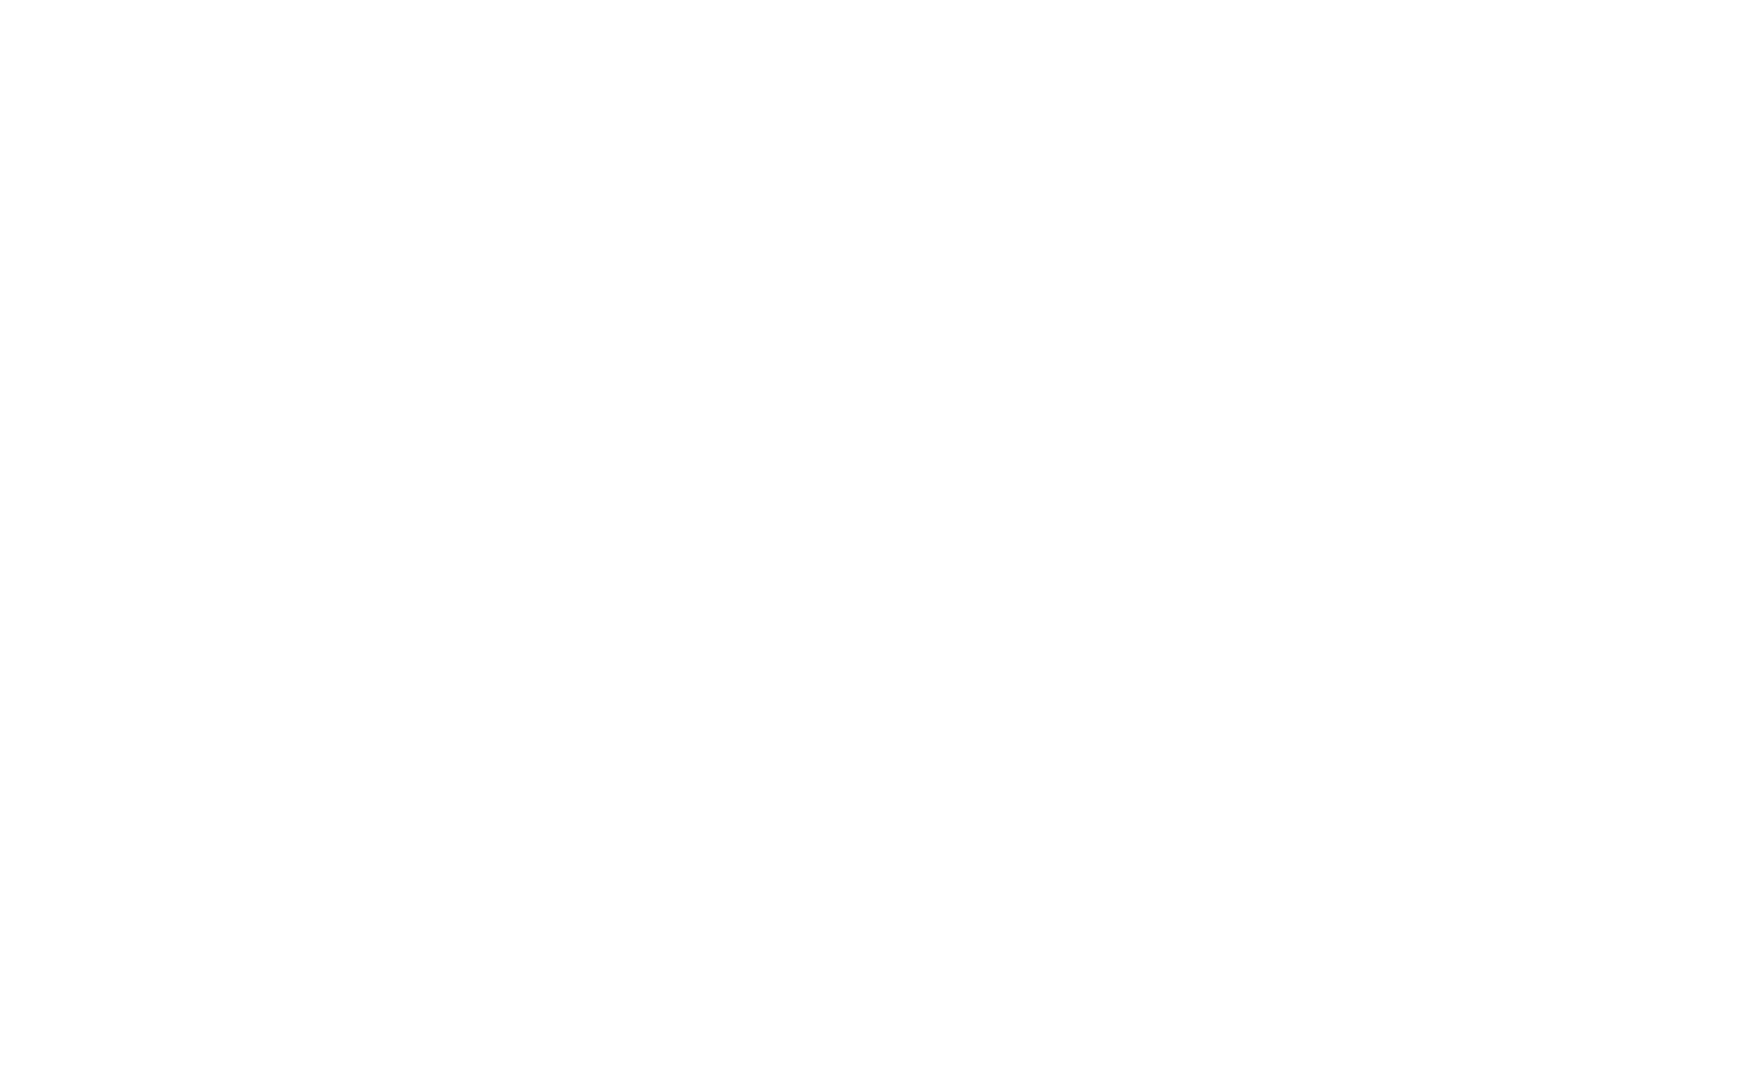 Speaking Academy